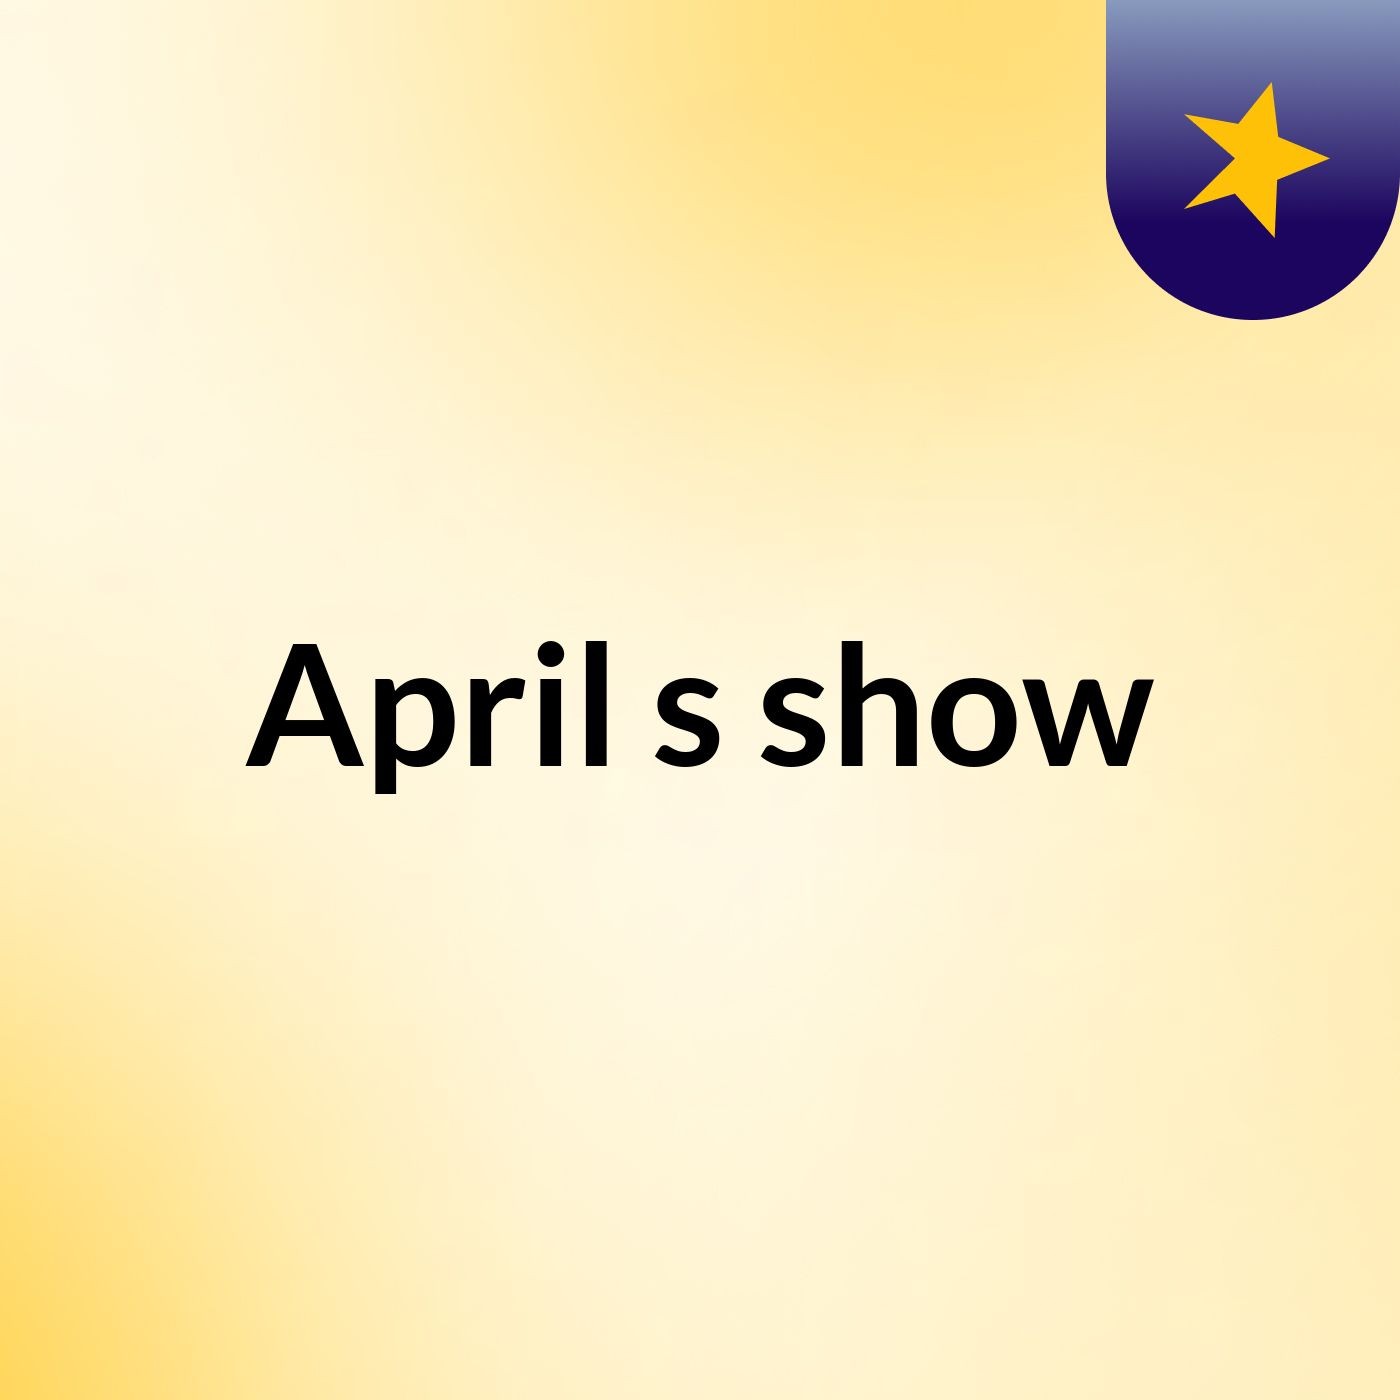 Episode 5 - April's show